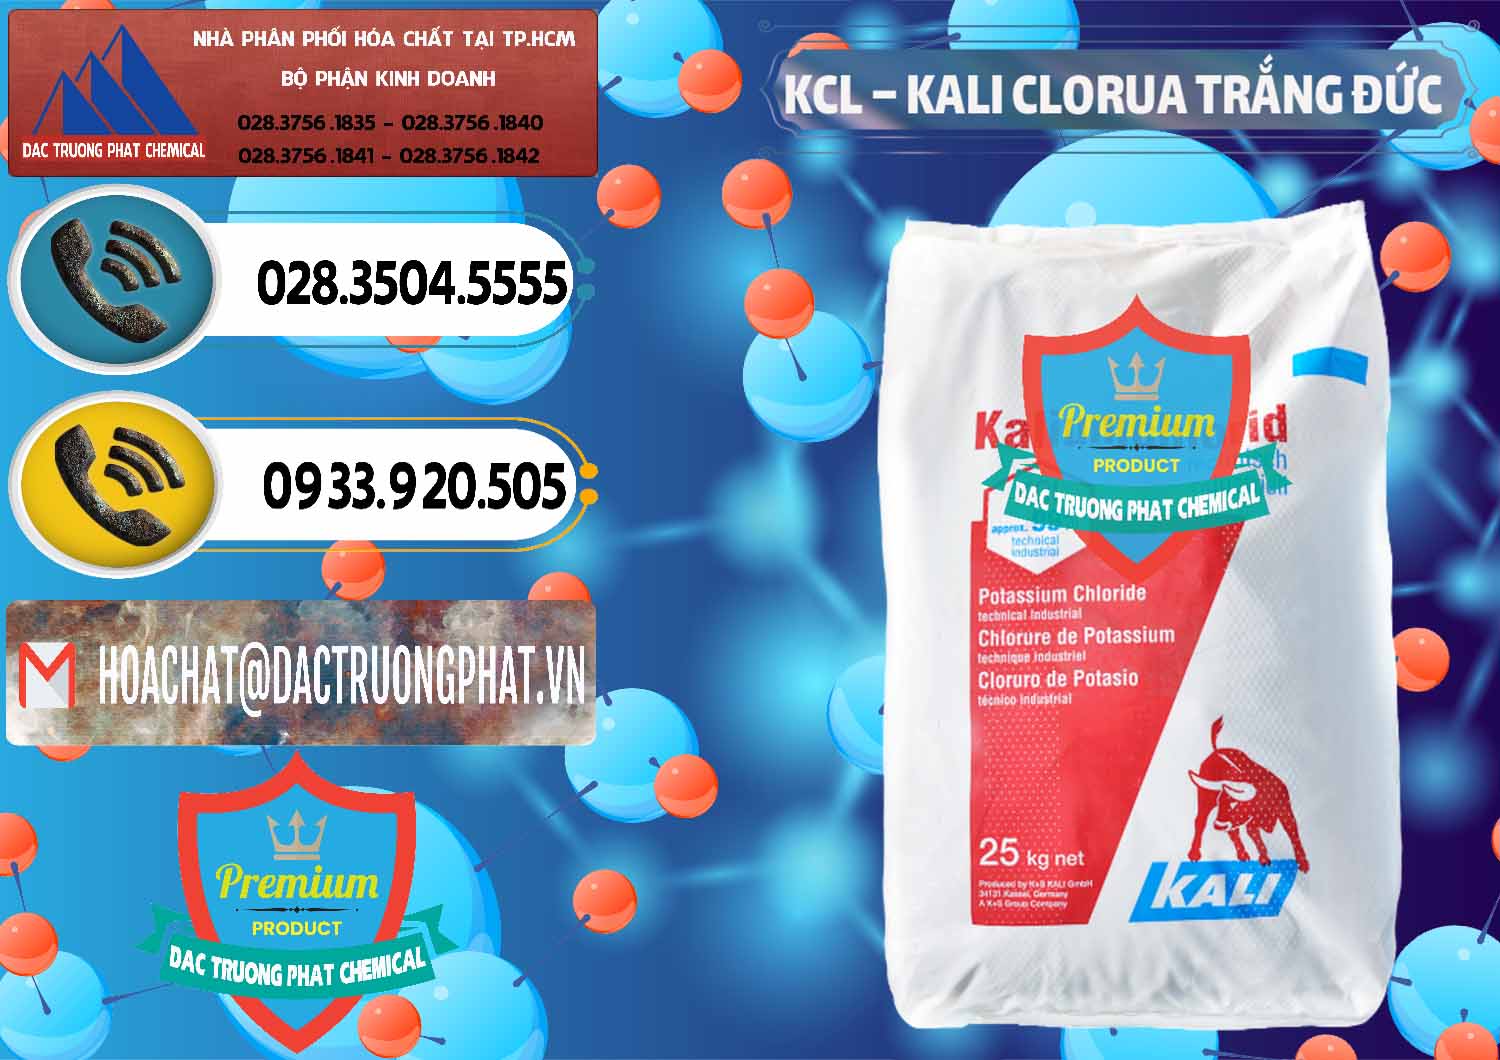 Chuyên cung ứng - bán KCL – Kali Clorua Trắng Đức Germany - 0086 - Đơn vị kinh doanh & cung cấp hóa chất tại TP.HCM - hoachatdetnhuom.vn